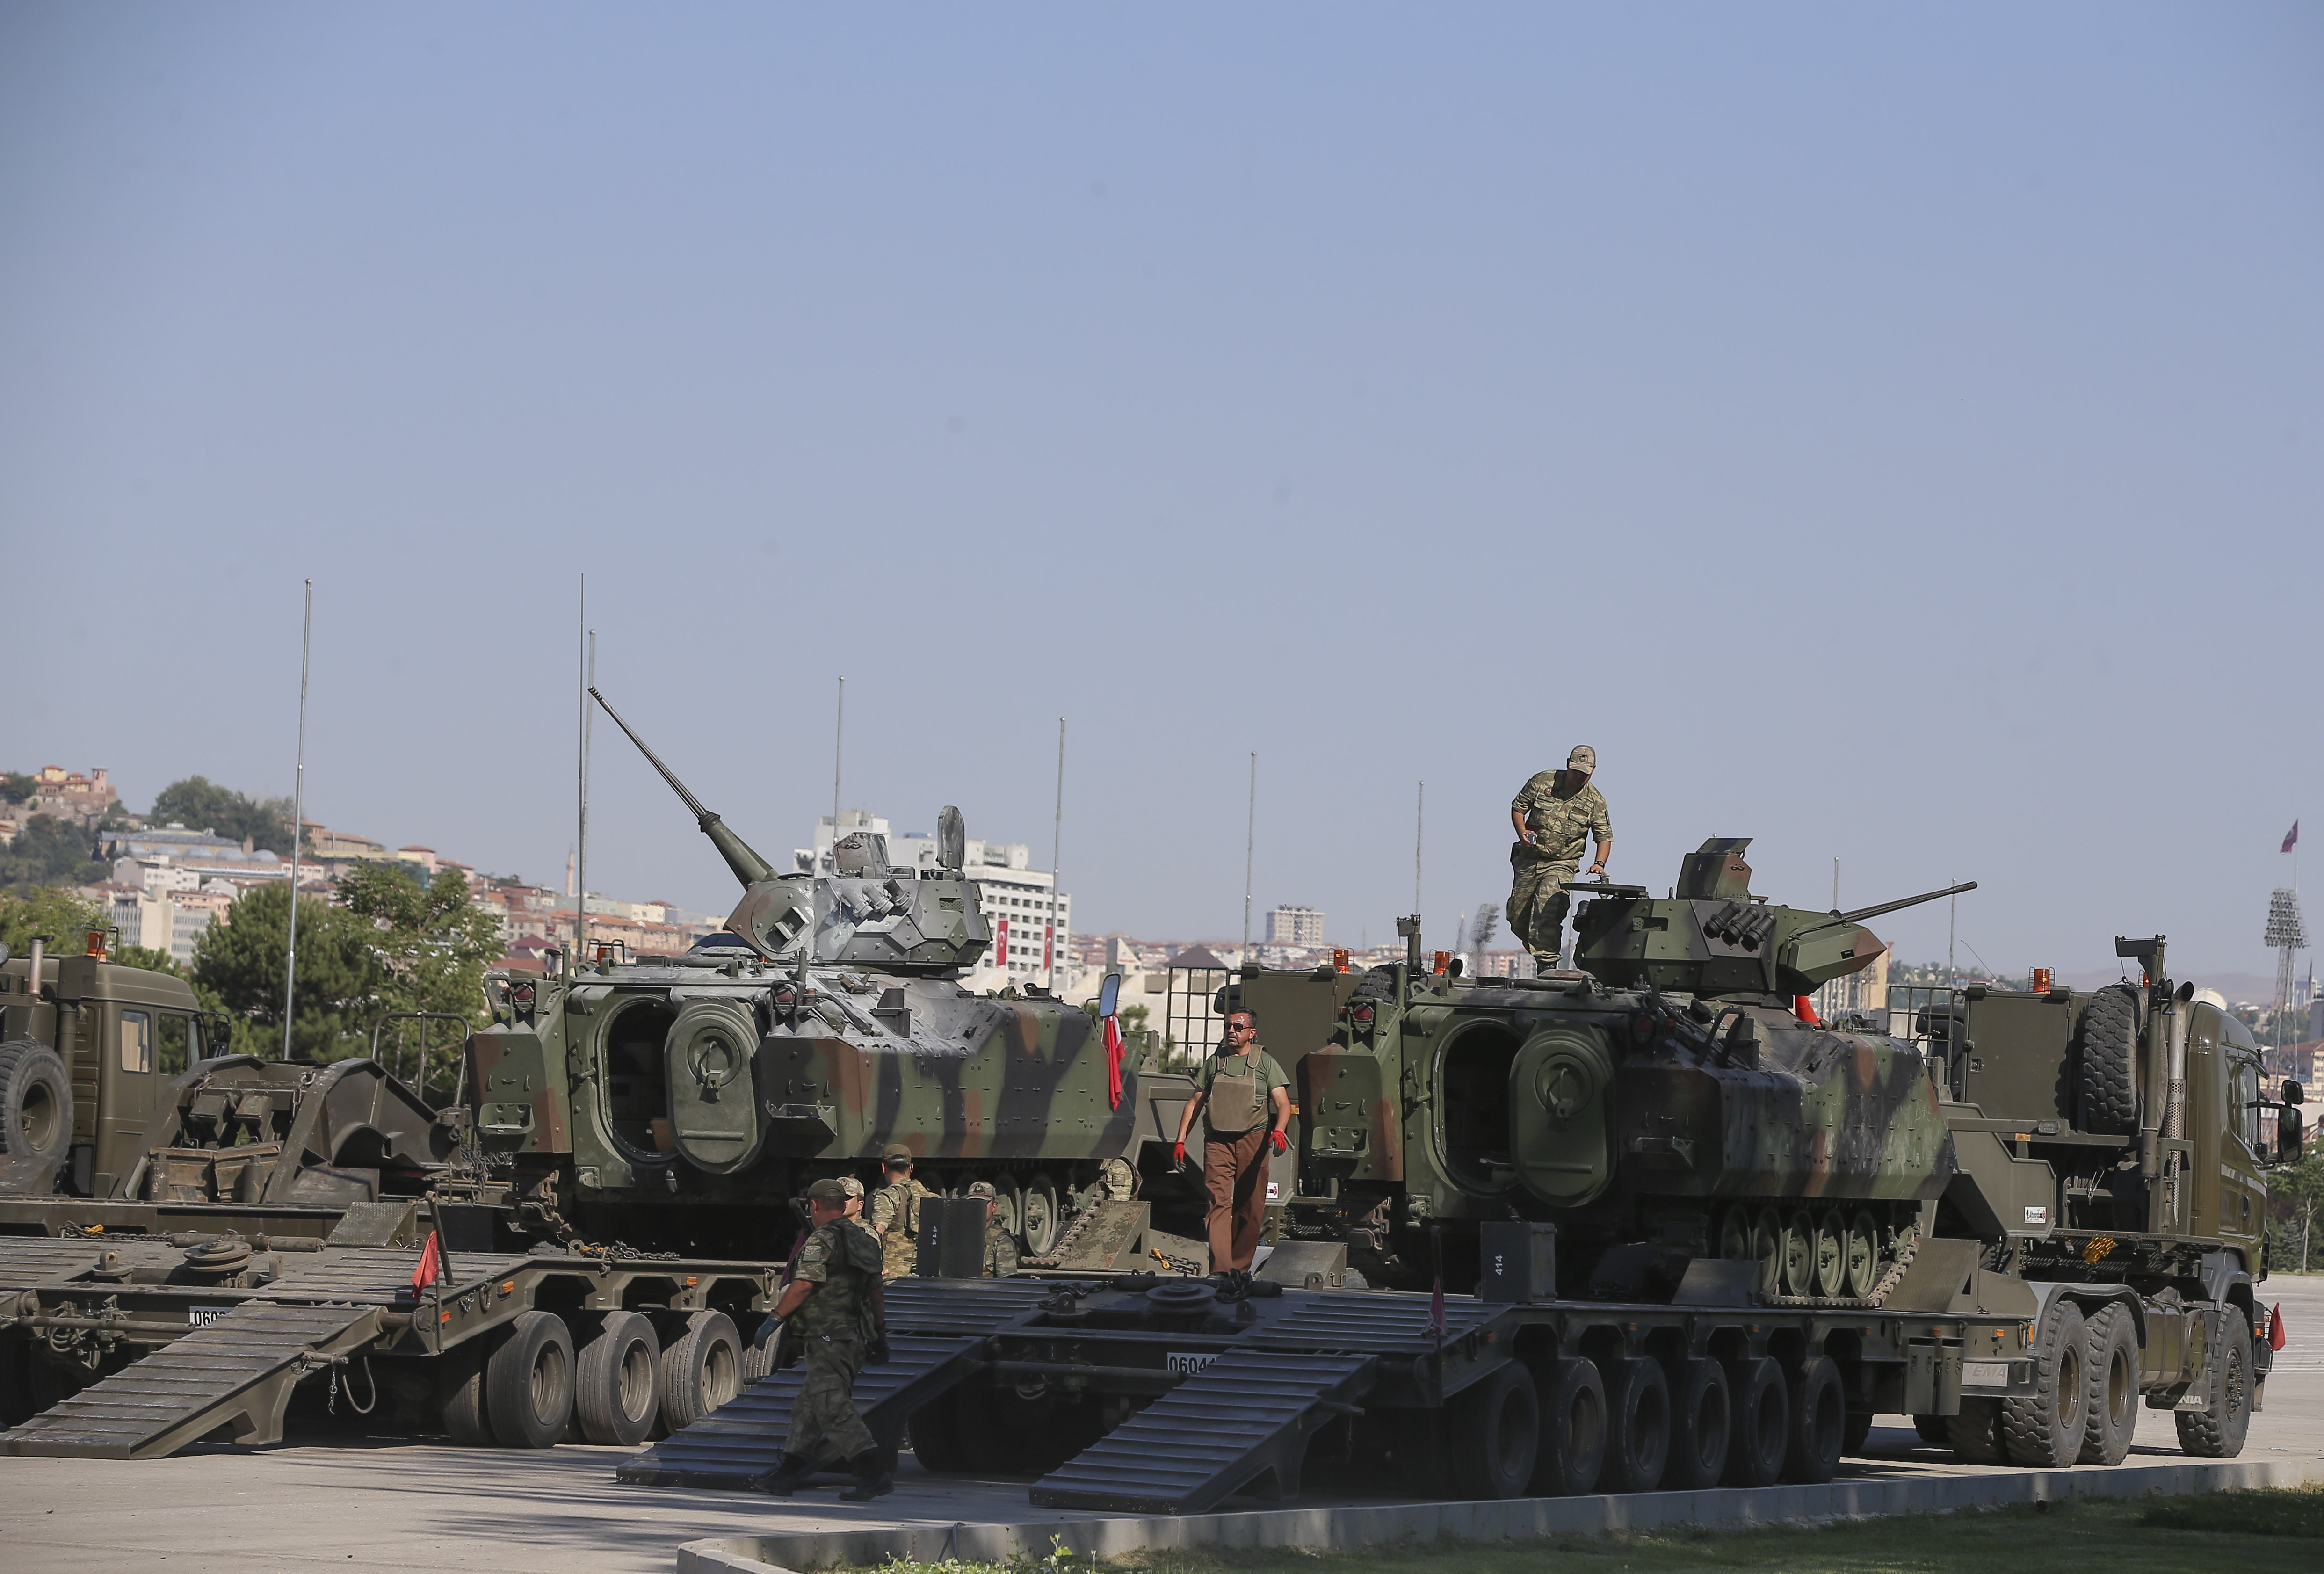 وانسحبت الدبابات التي كانت بمديرية أمن أنقرة، والتي تم استخدامها في محاولة الانقلاب الفاشلة للمنتمين لمنظمة غولن الإرهابية بواسطة الشاحنات العسكرية.